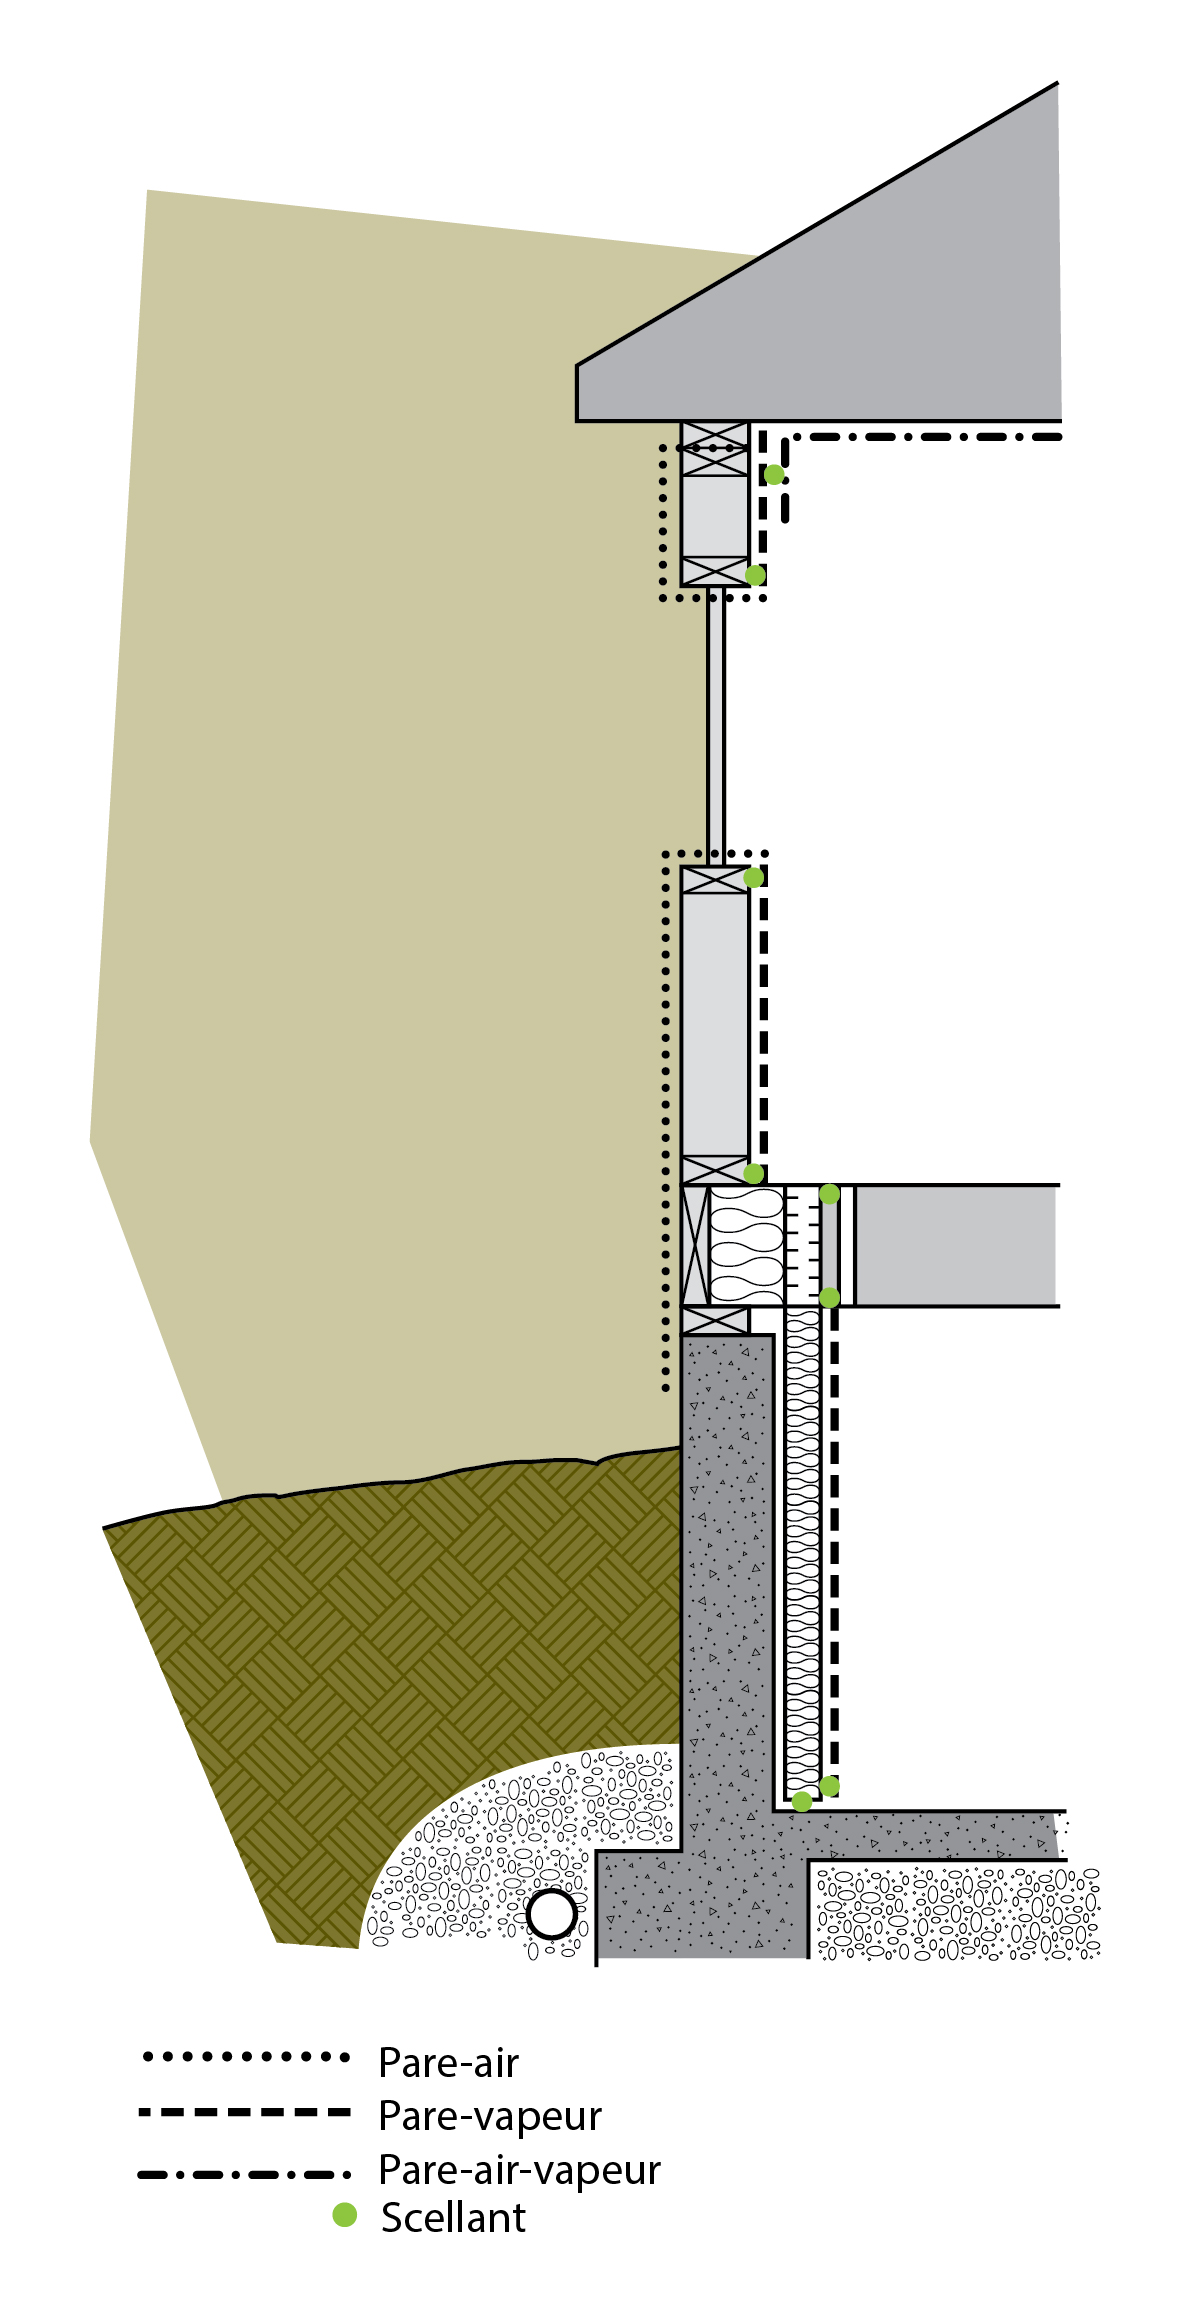 Le pare-air est un système qui unit plusieurs composants du bâtiment